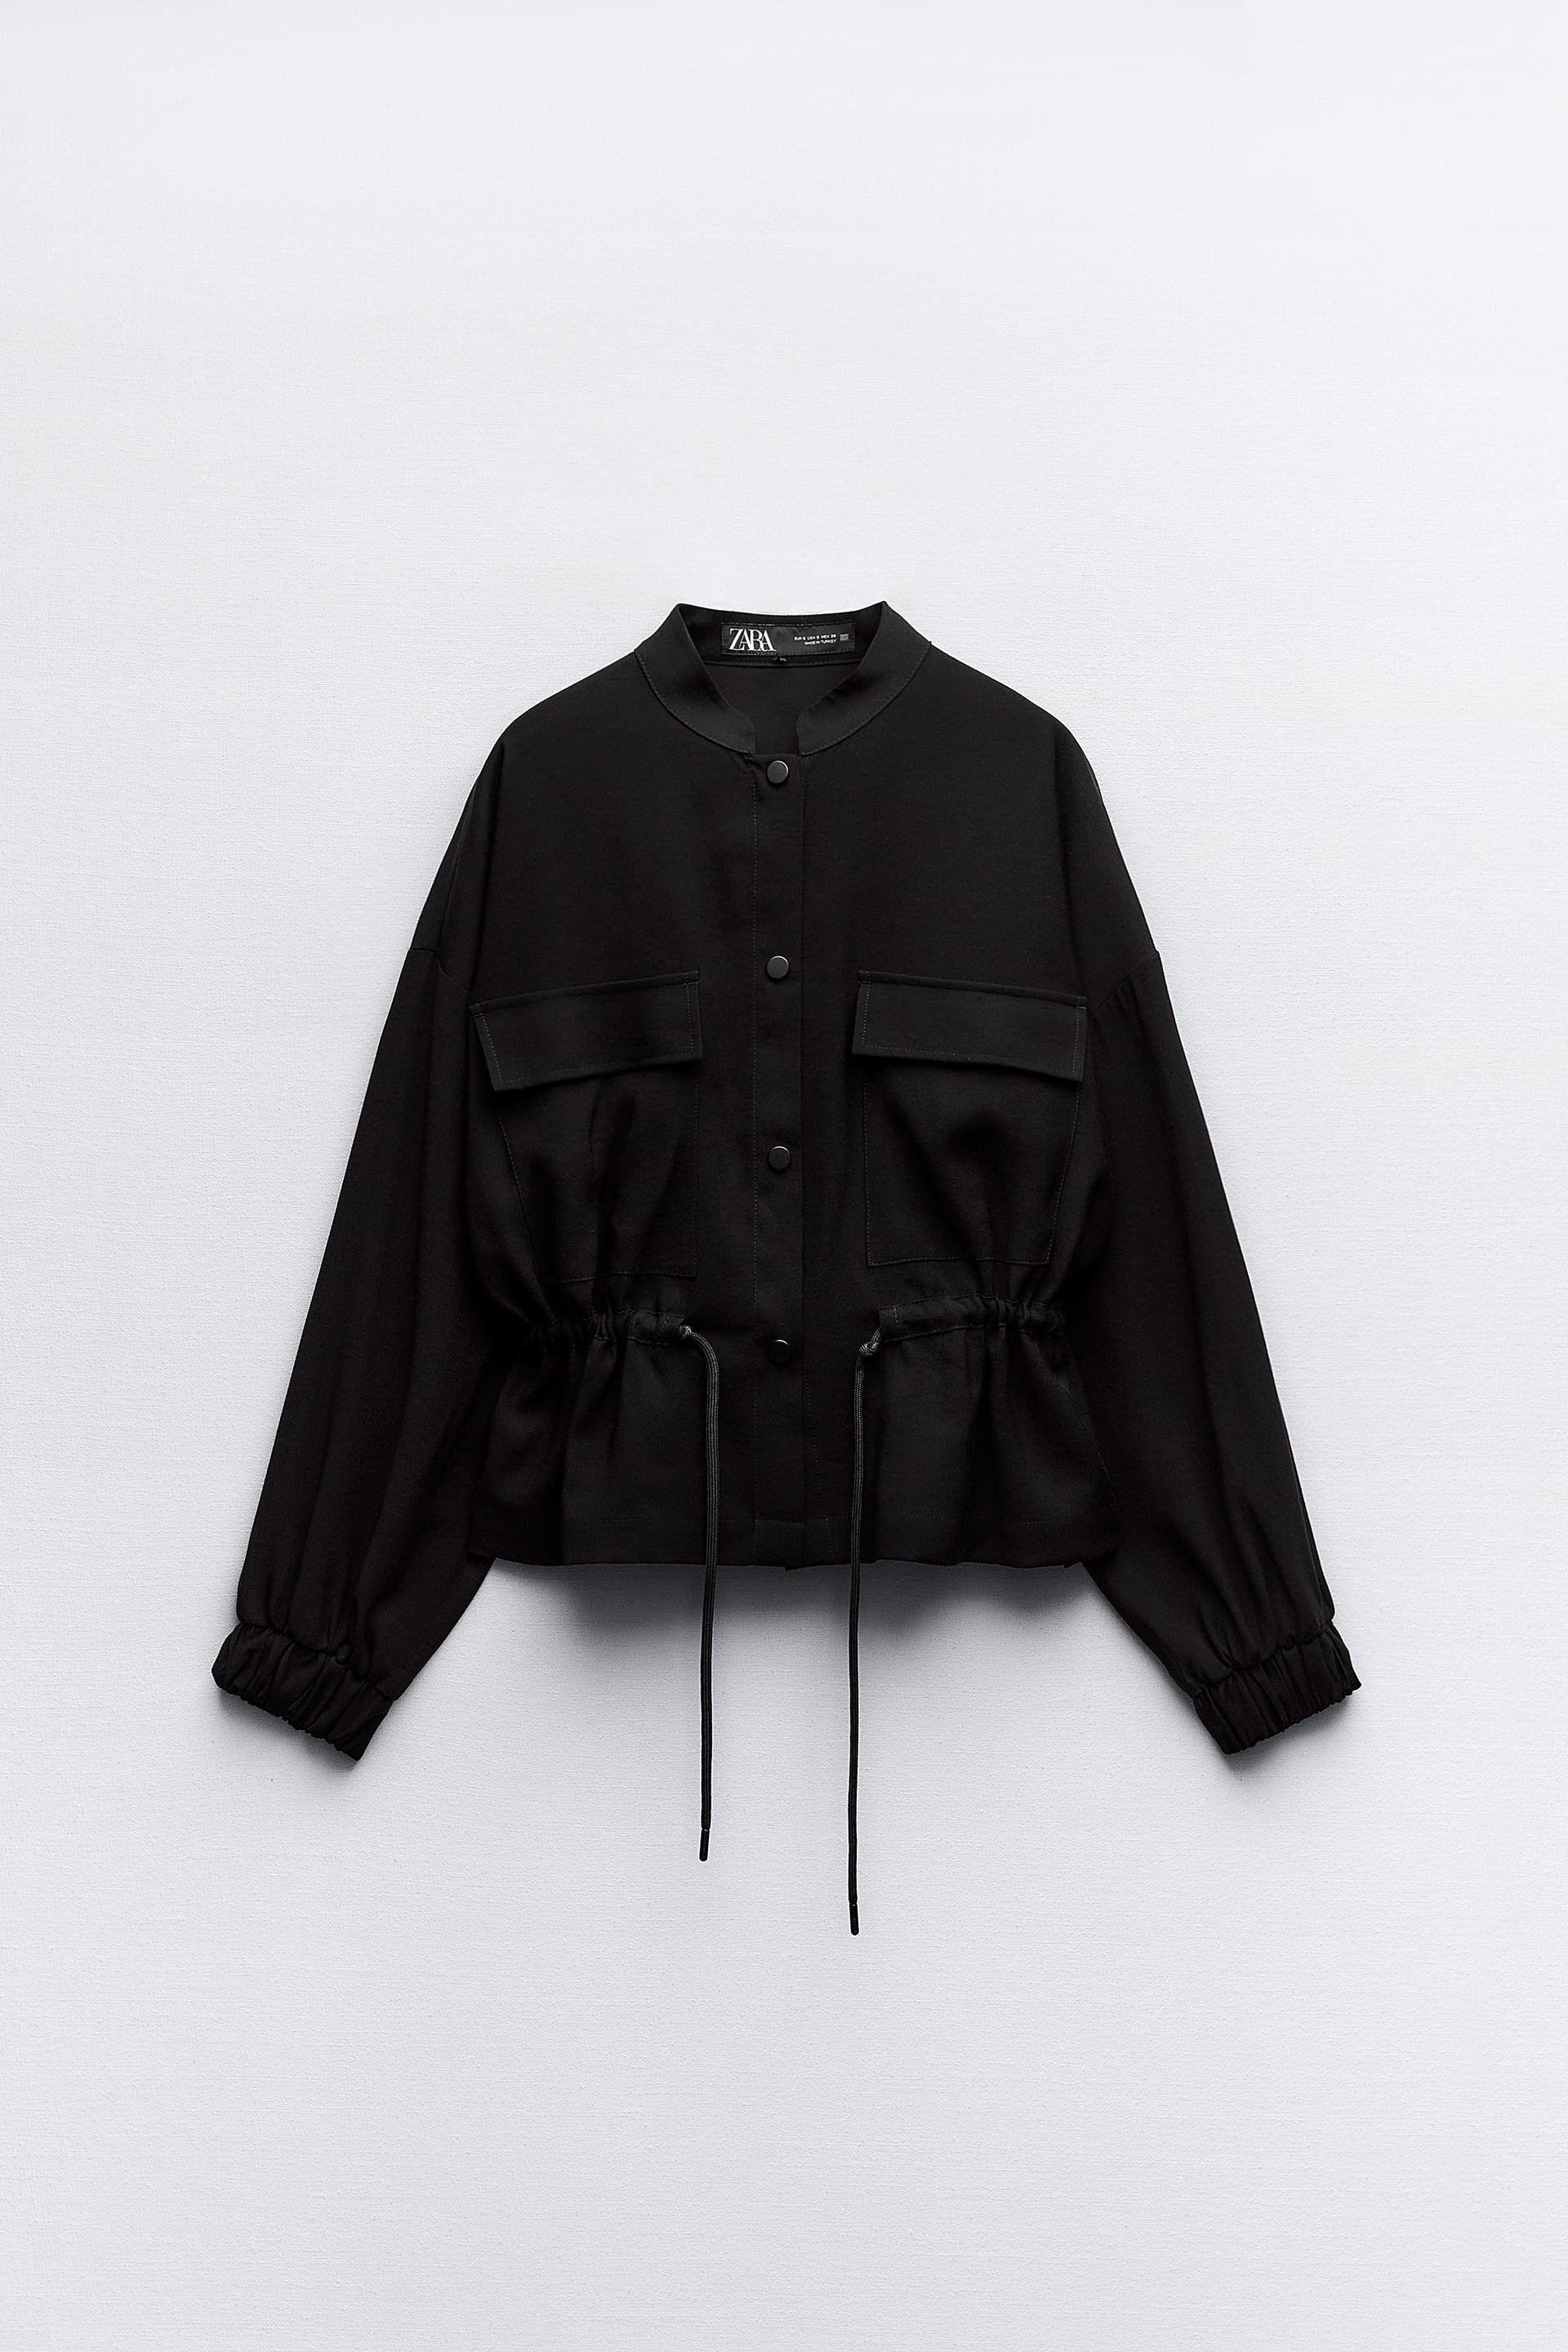 Zara Jacket with Drawstring Waist.jpg